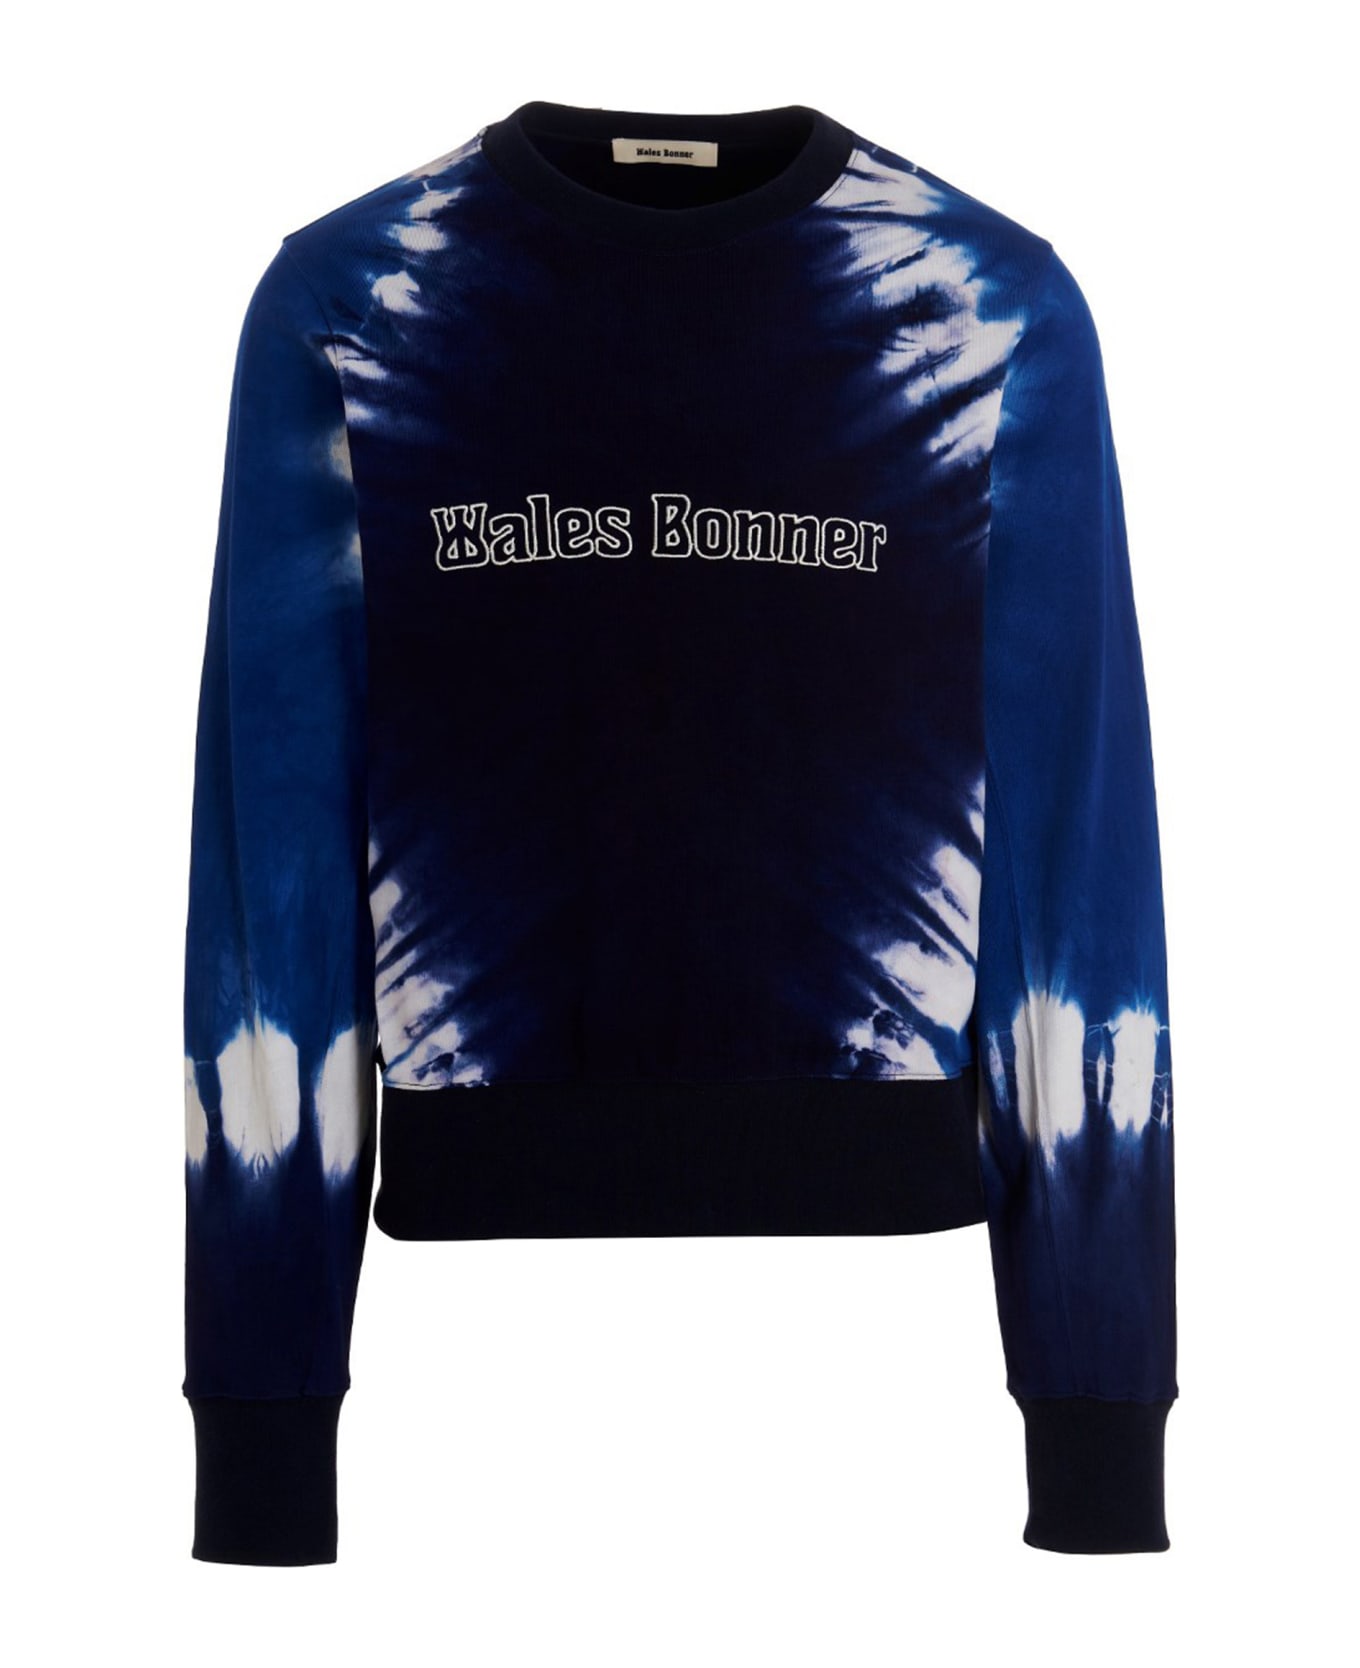 Wales Bonner Logo Embroidery Tie Dye Sweatshirt - Blue